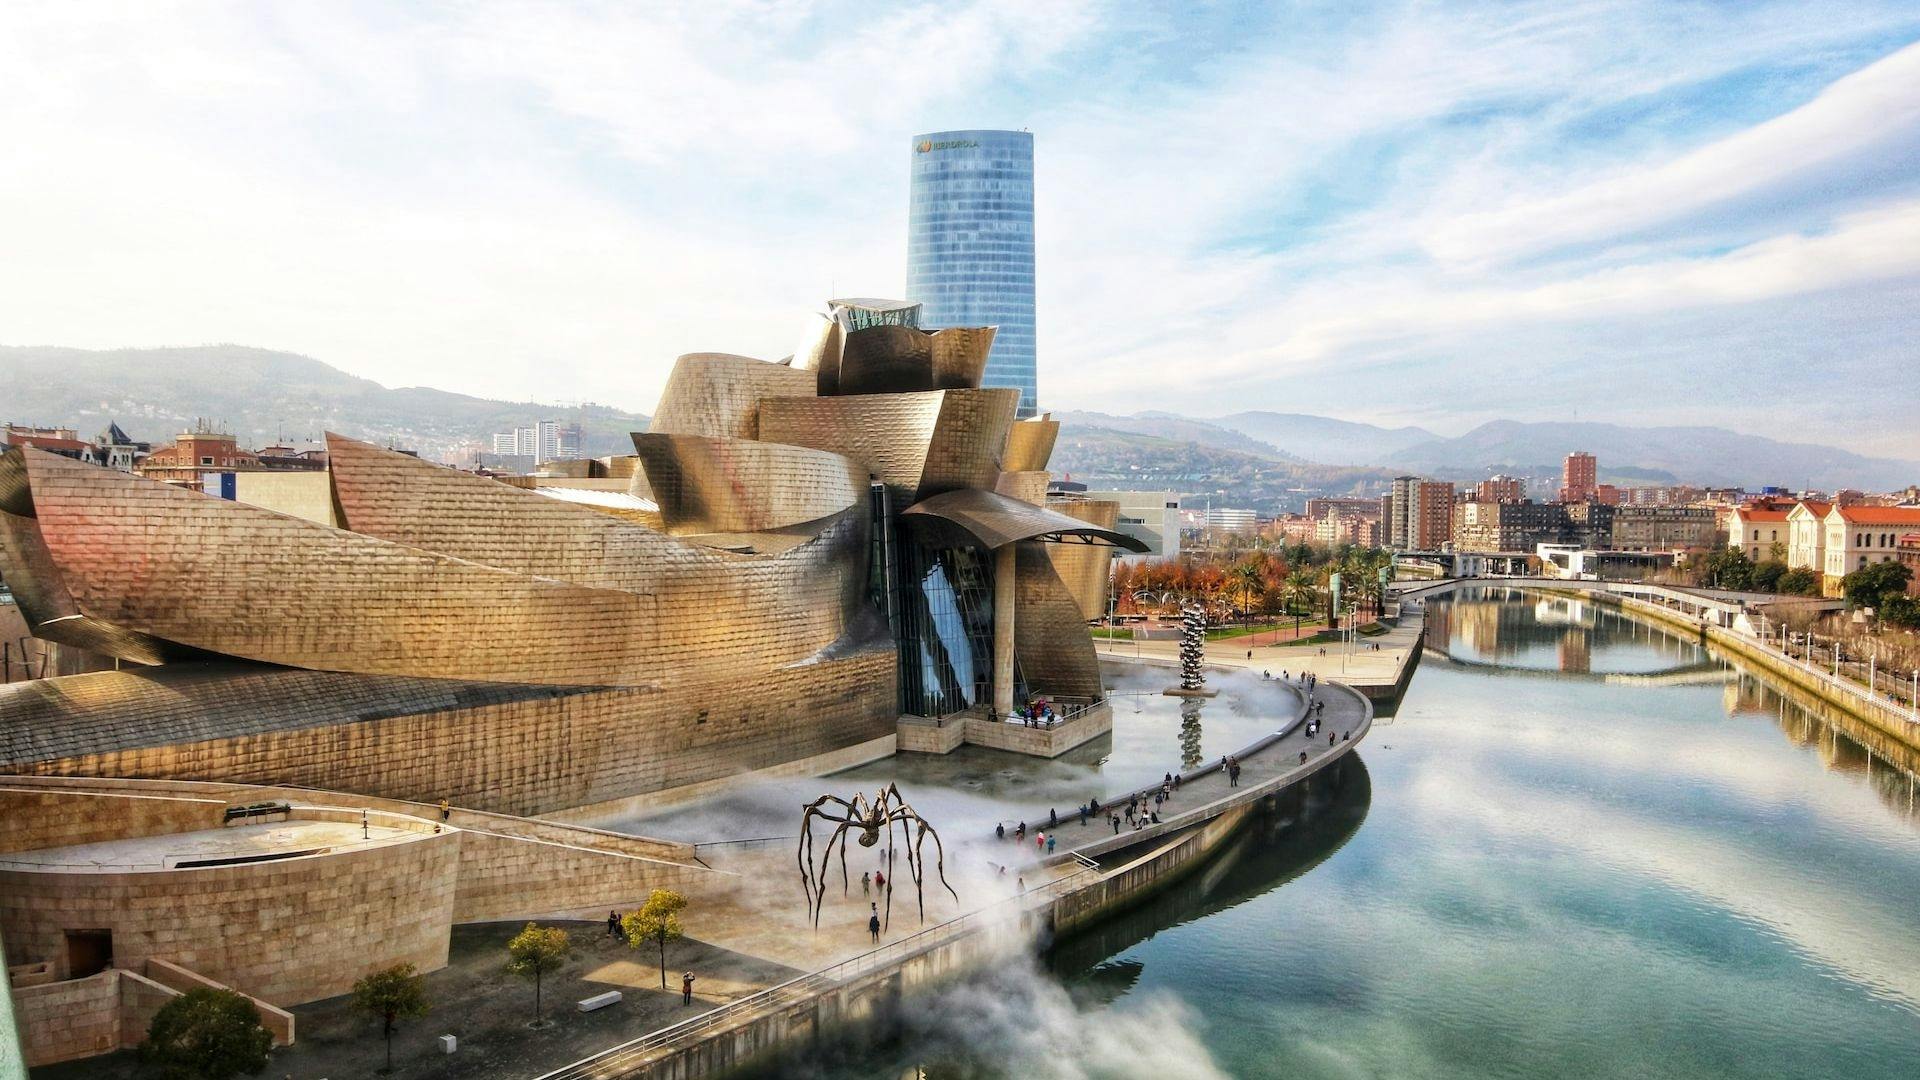 Bilbao Guggenheim Museum Entrance Ticket Musement